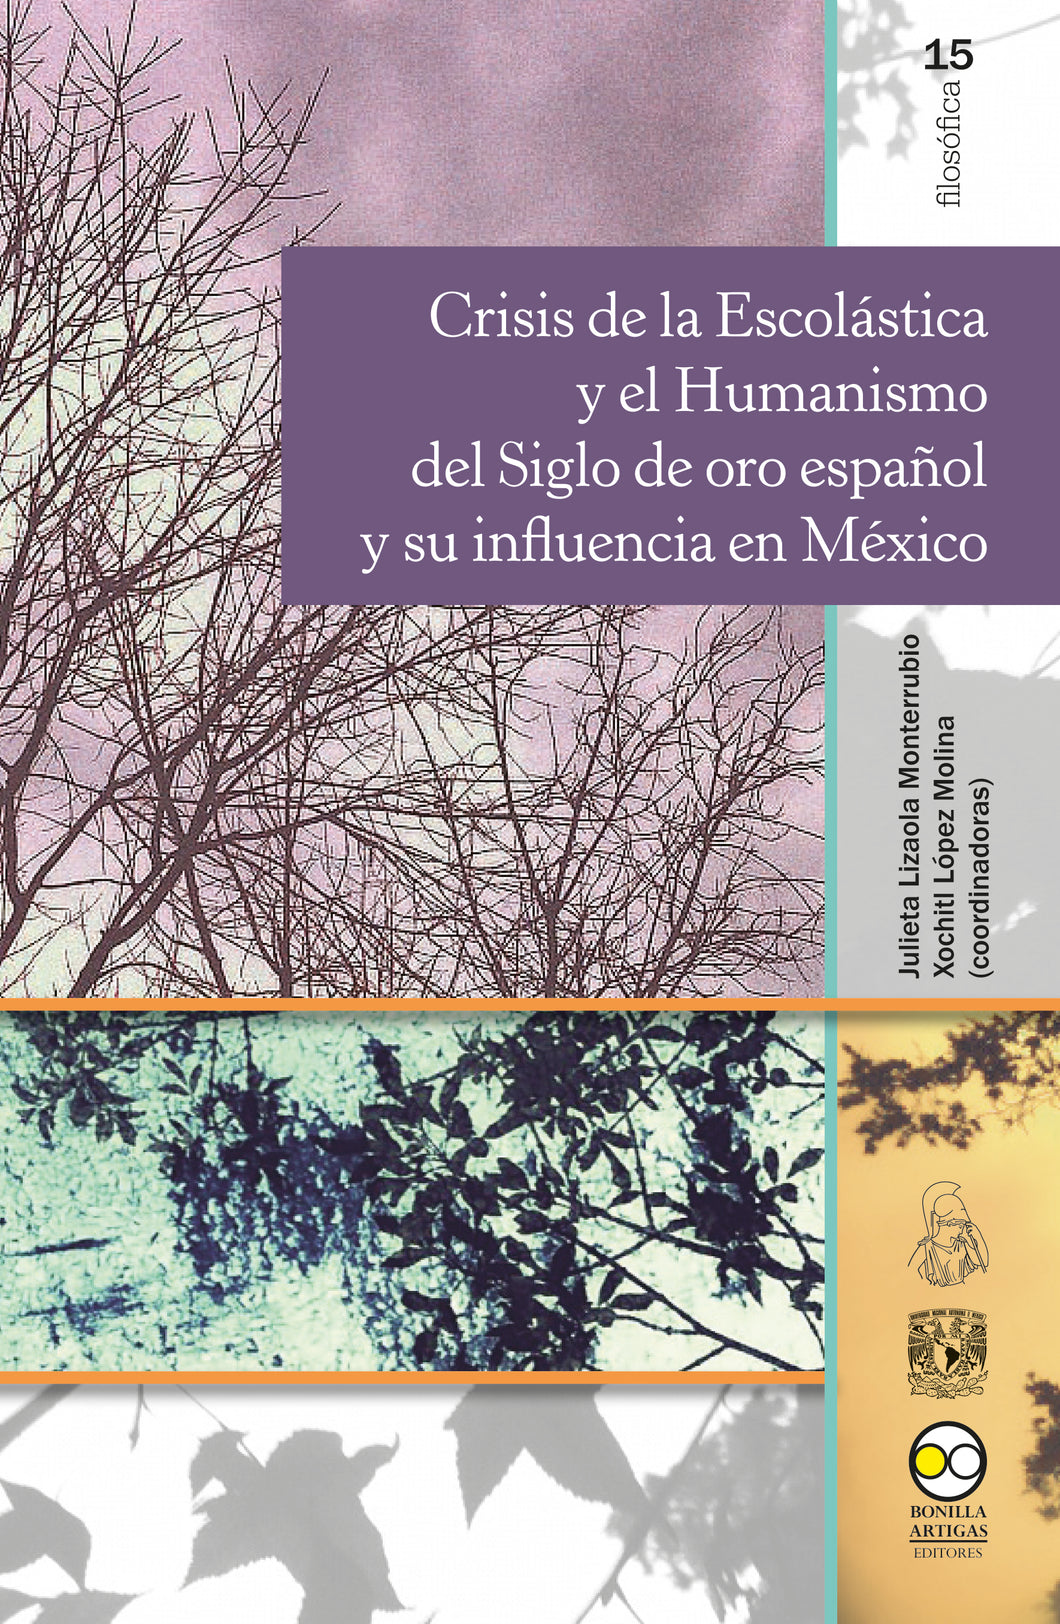 Crisis de la escolástica y el humanismo del siglo de oro español y su influencia-López Molina, Xochitl ; Lizaola Monterrubio, Julieta